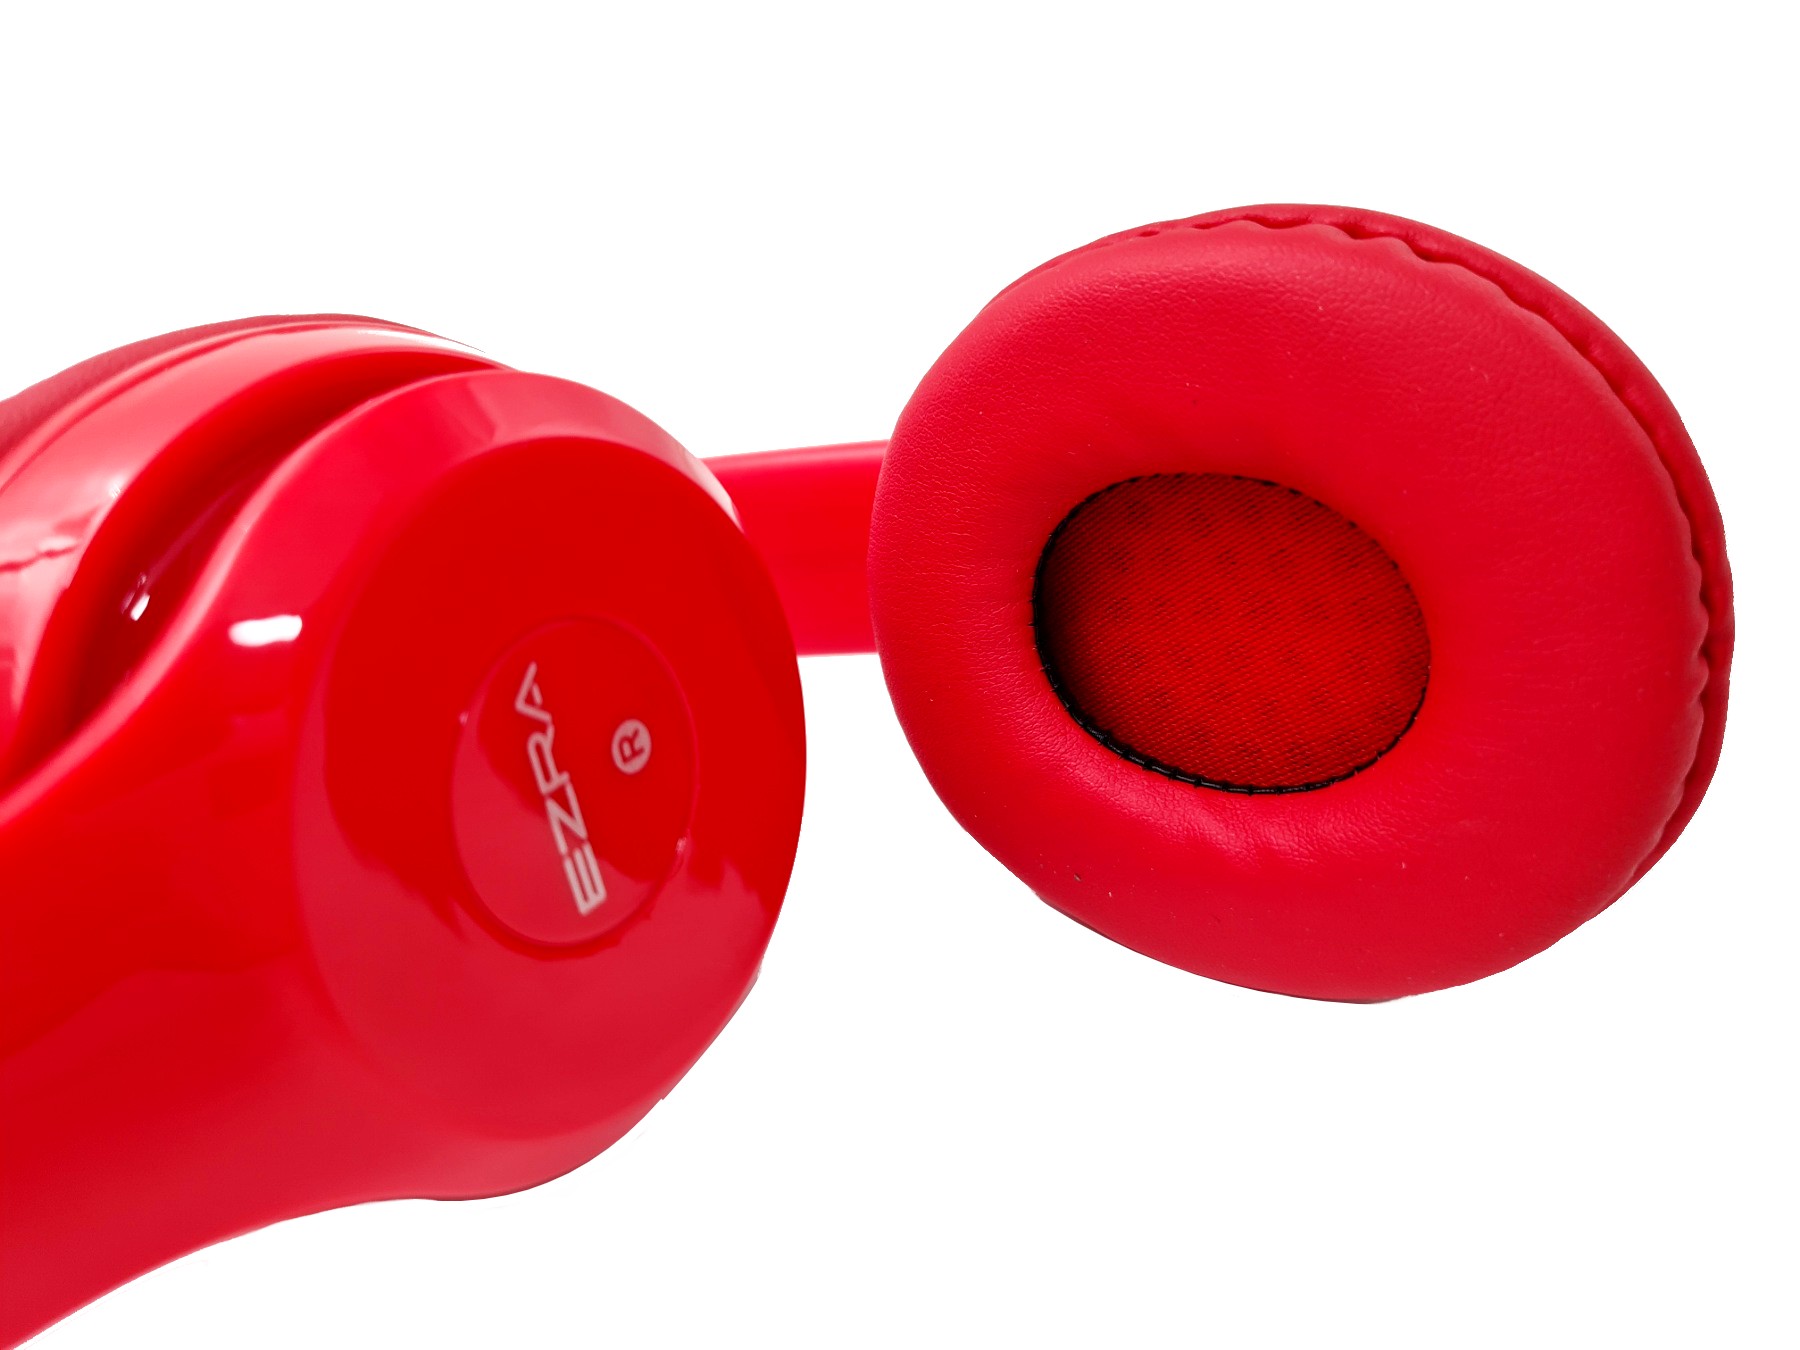 Ενσύρματα Ακουστικά Handsfree με Μικρόφωνο Stereo EZRA BH05 Κόκκινο